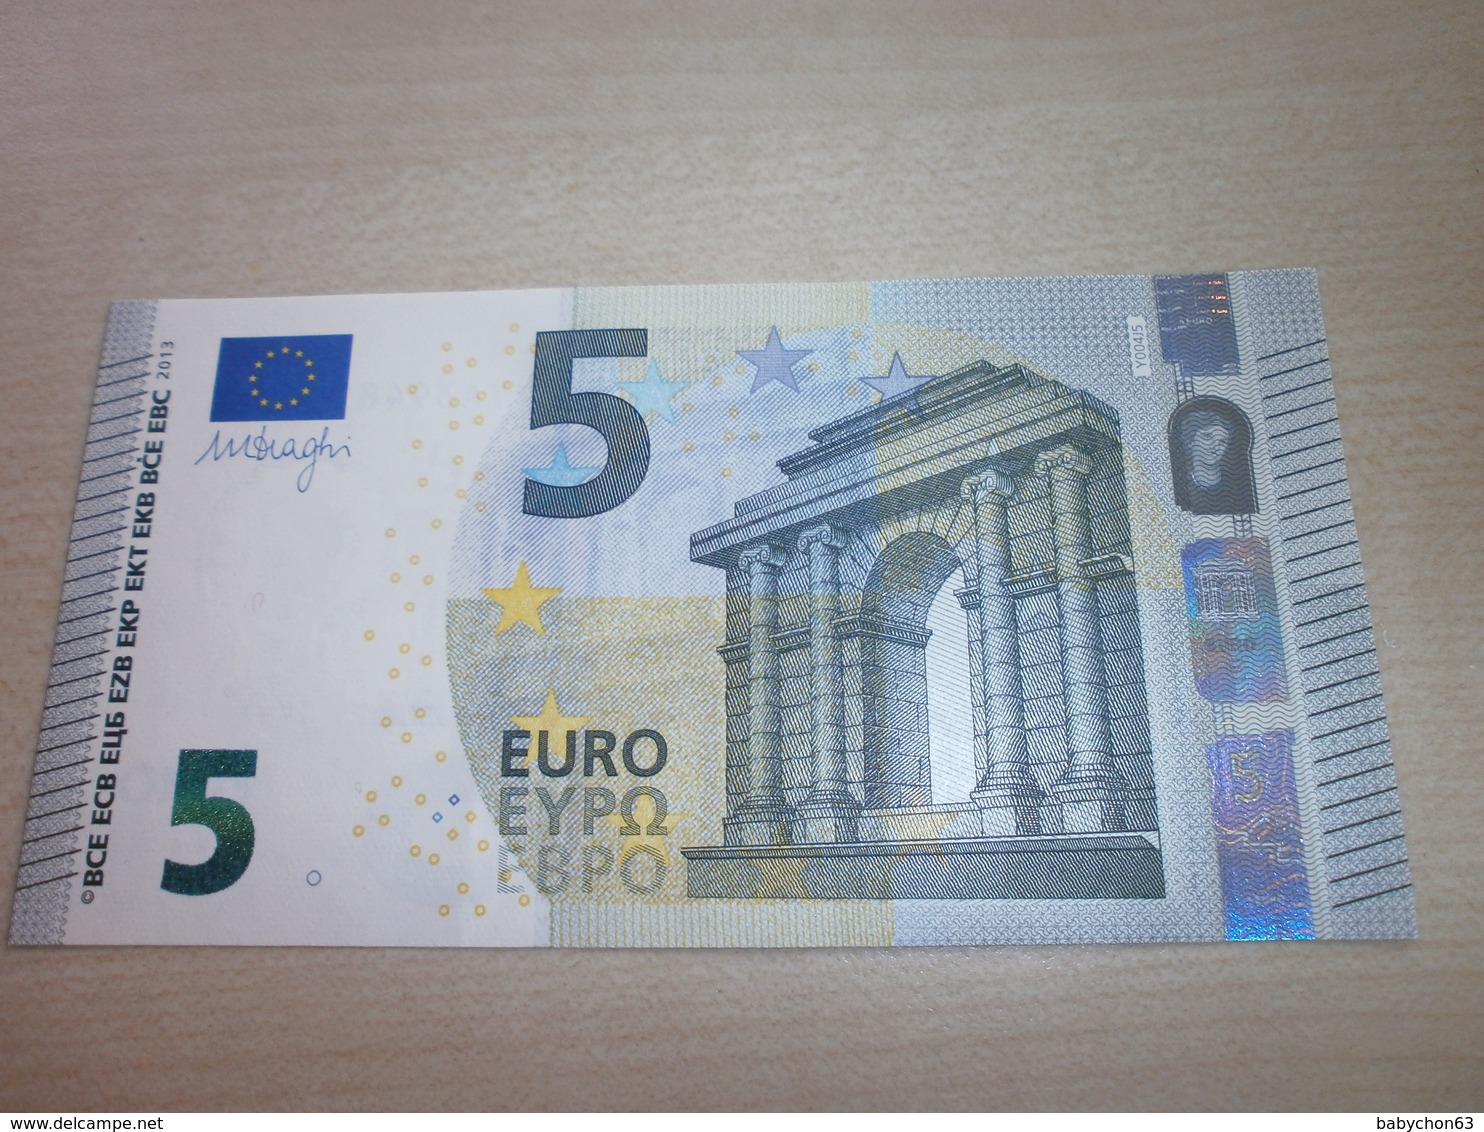 5 EUROS (Y Y004 J5) - 5 Euro